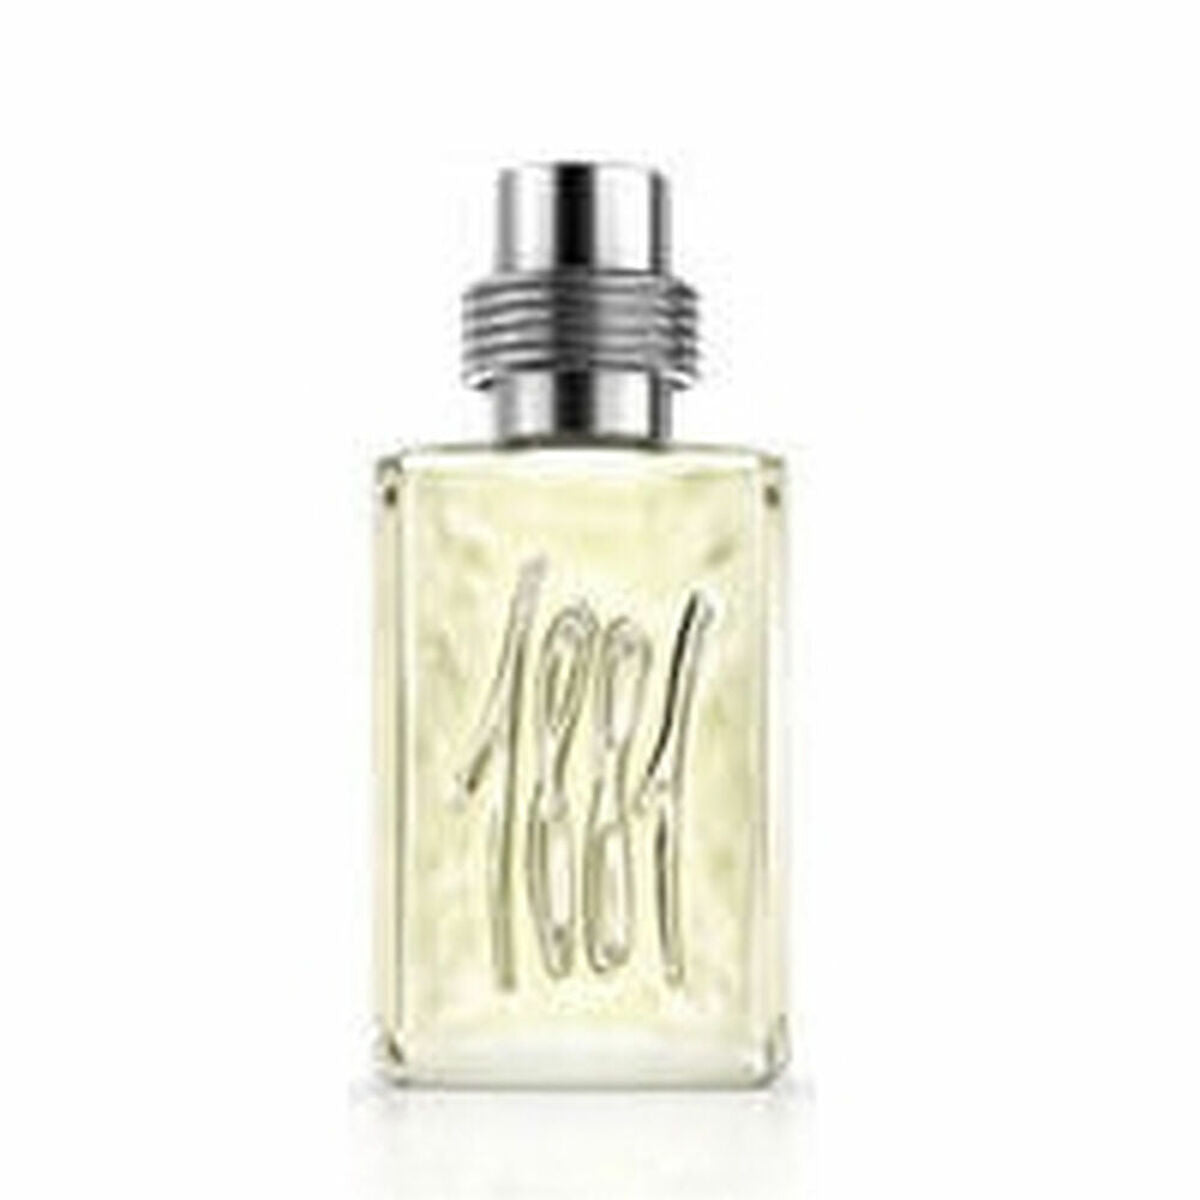 Perfume pour hommes Cerruti 16634 EDT 25 ml